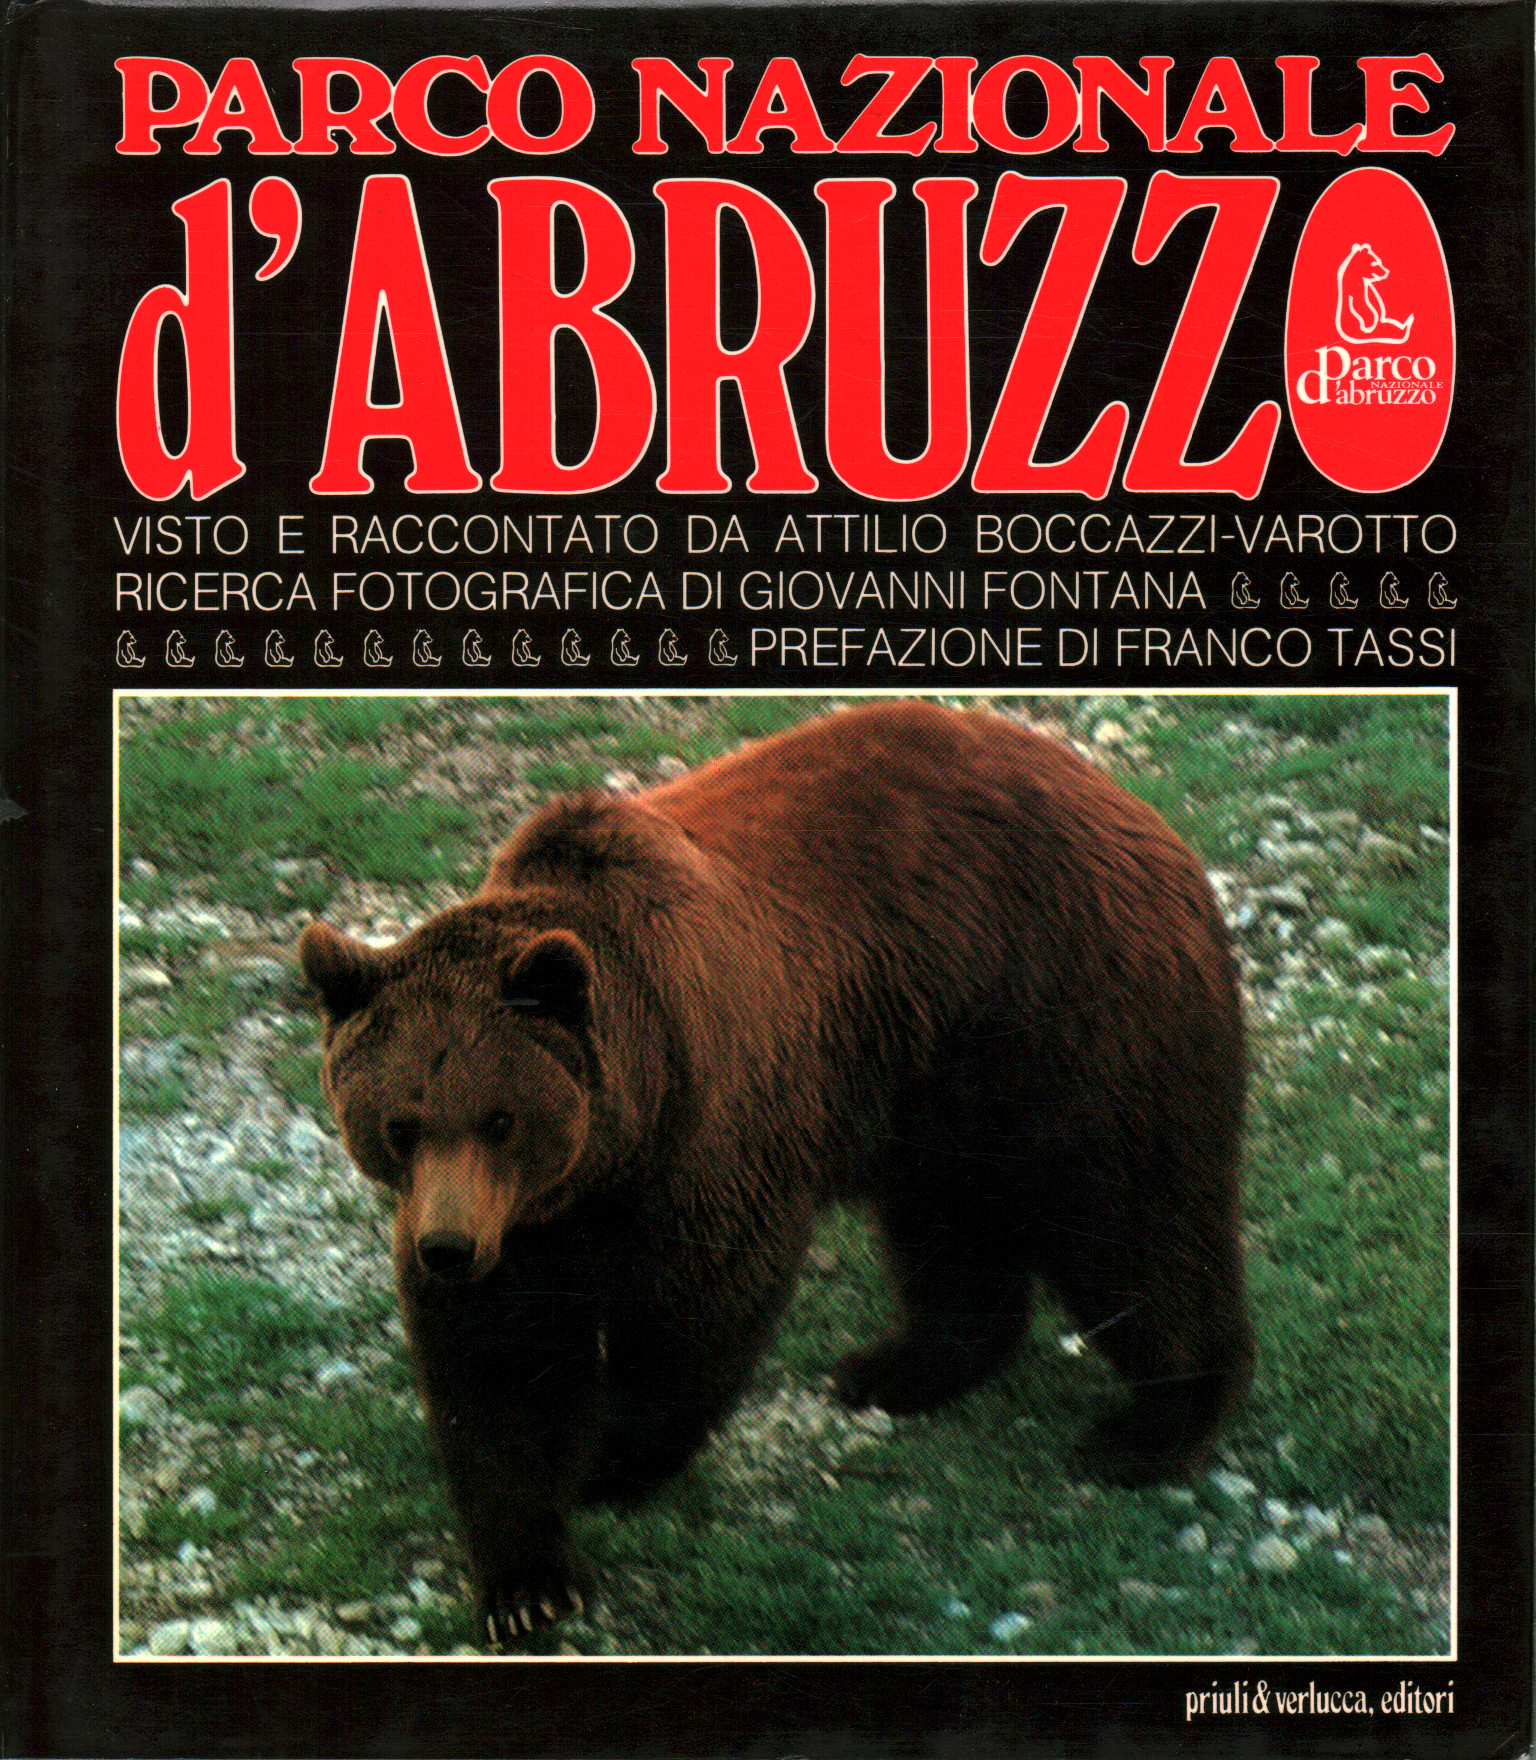 Parco Nazionale d'abruzzo, Attilio Boccazzi-Varotto